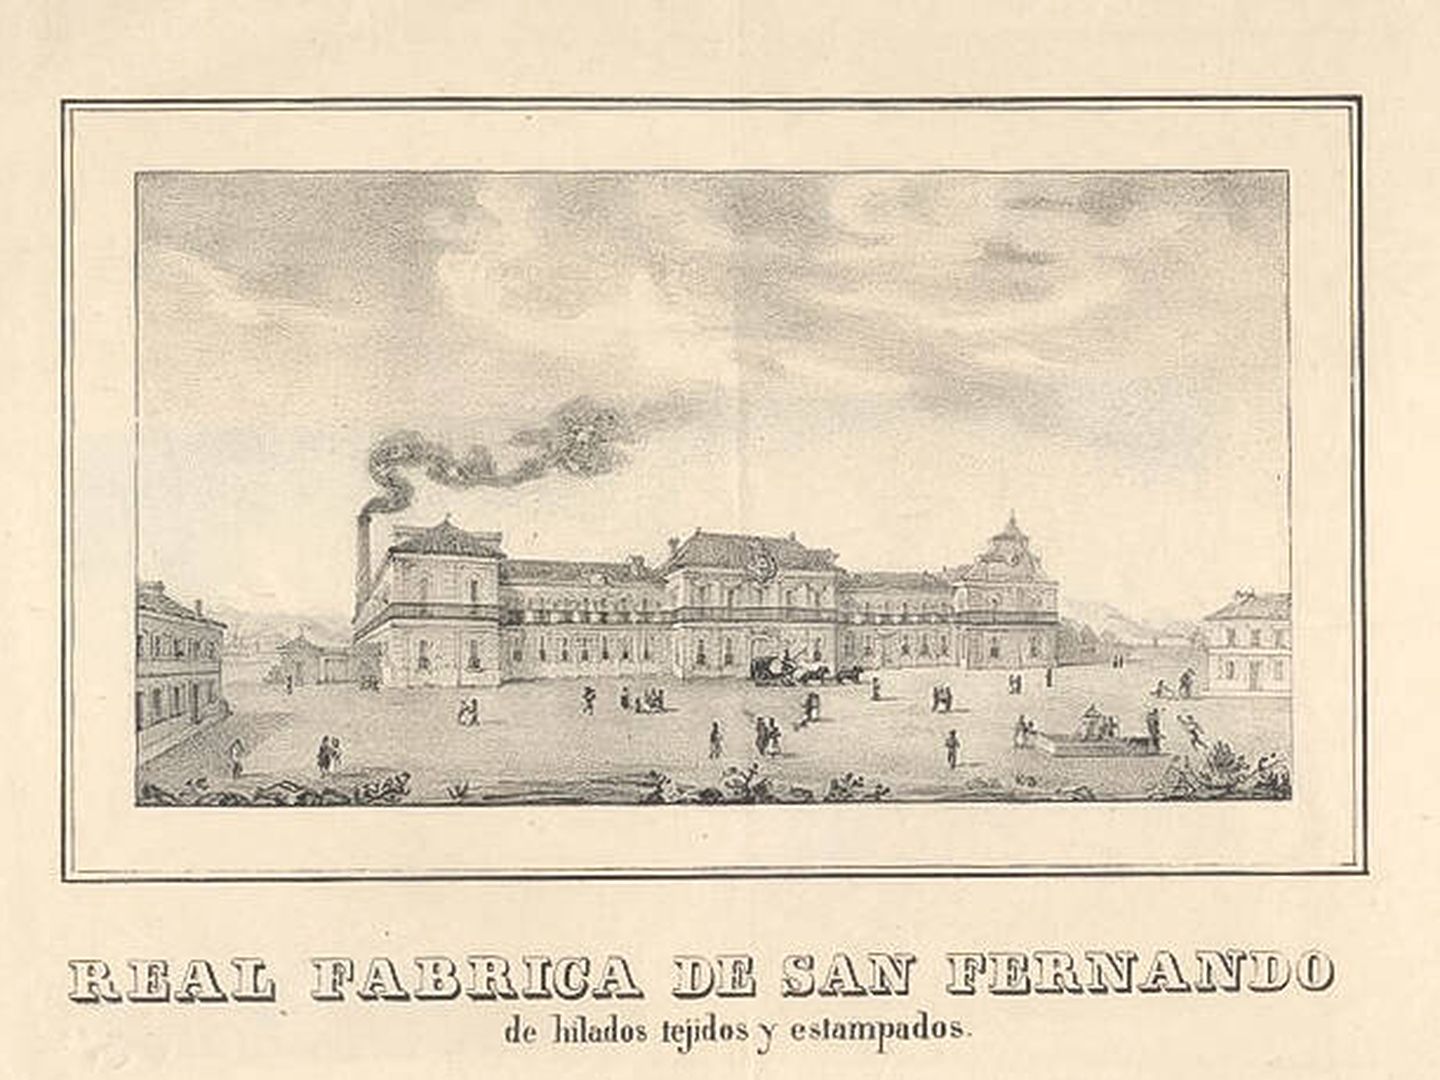 Litografía de la Real Fábrica de Paños de San Fernando. (Ayuntamiento de San Fernando)